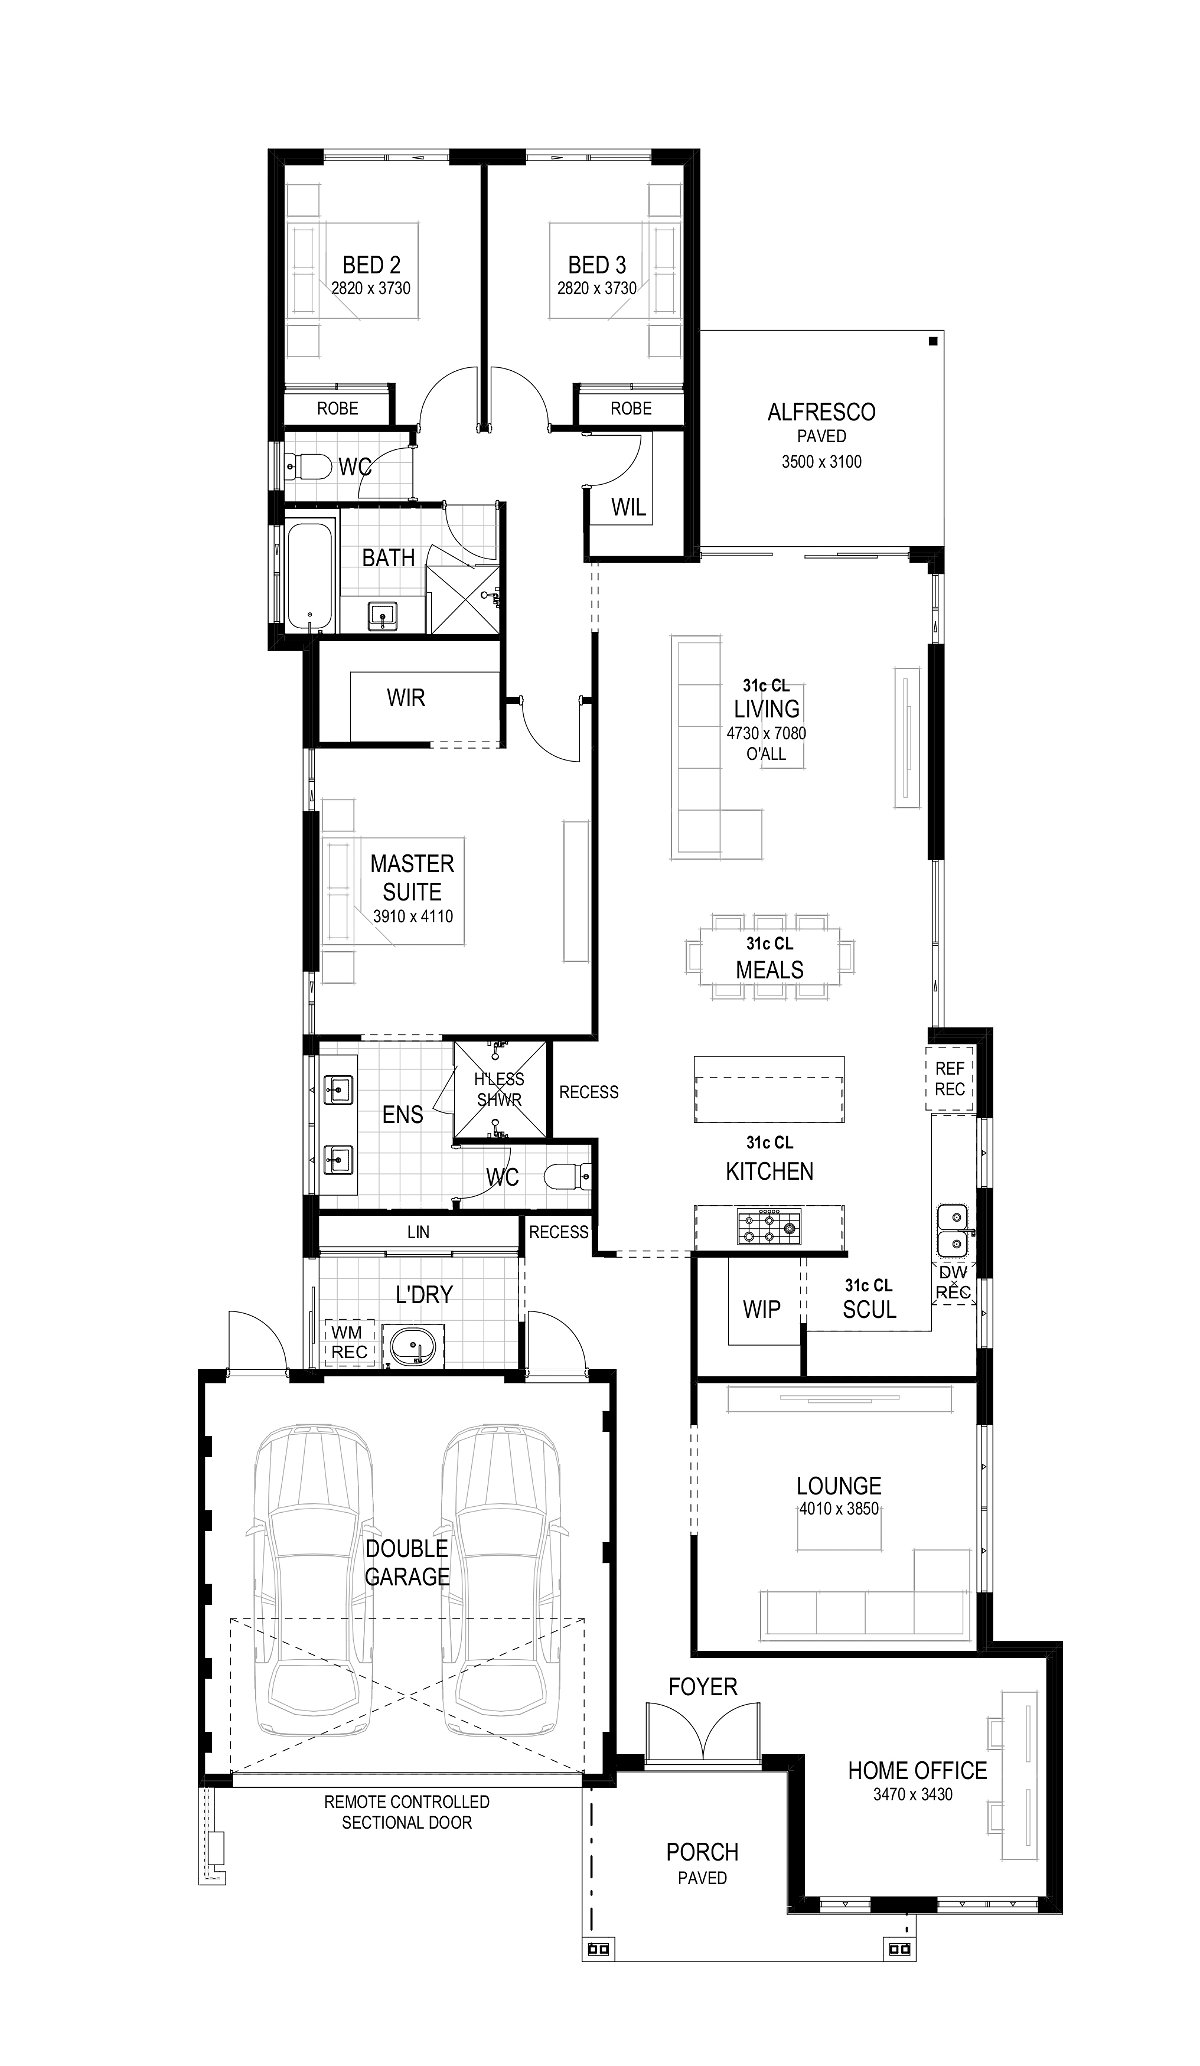 Plunkett Homes - Avenue | Federation - Floorplan - 202403 Plk The Avenue Floorplan Federation Luxe